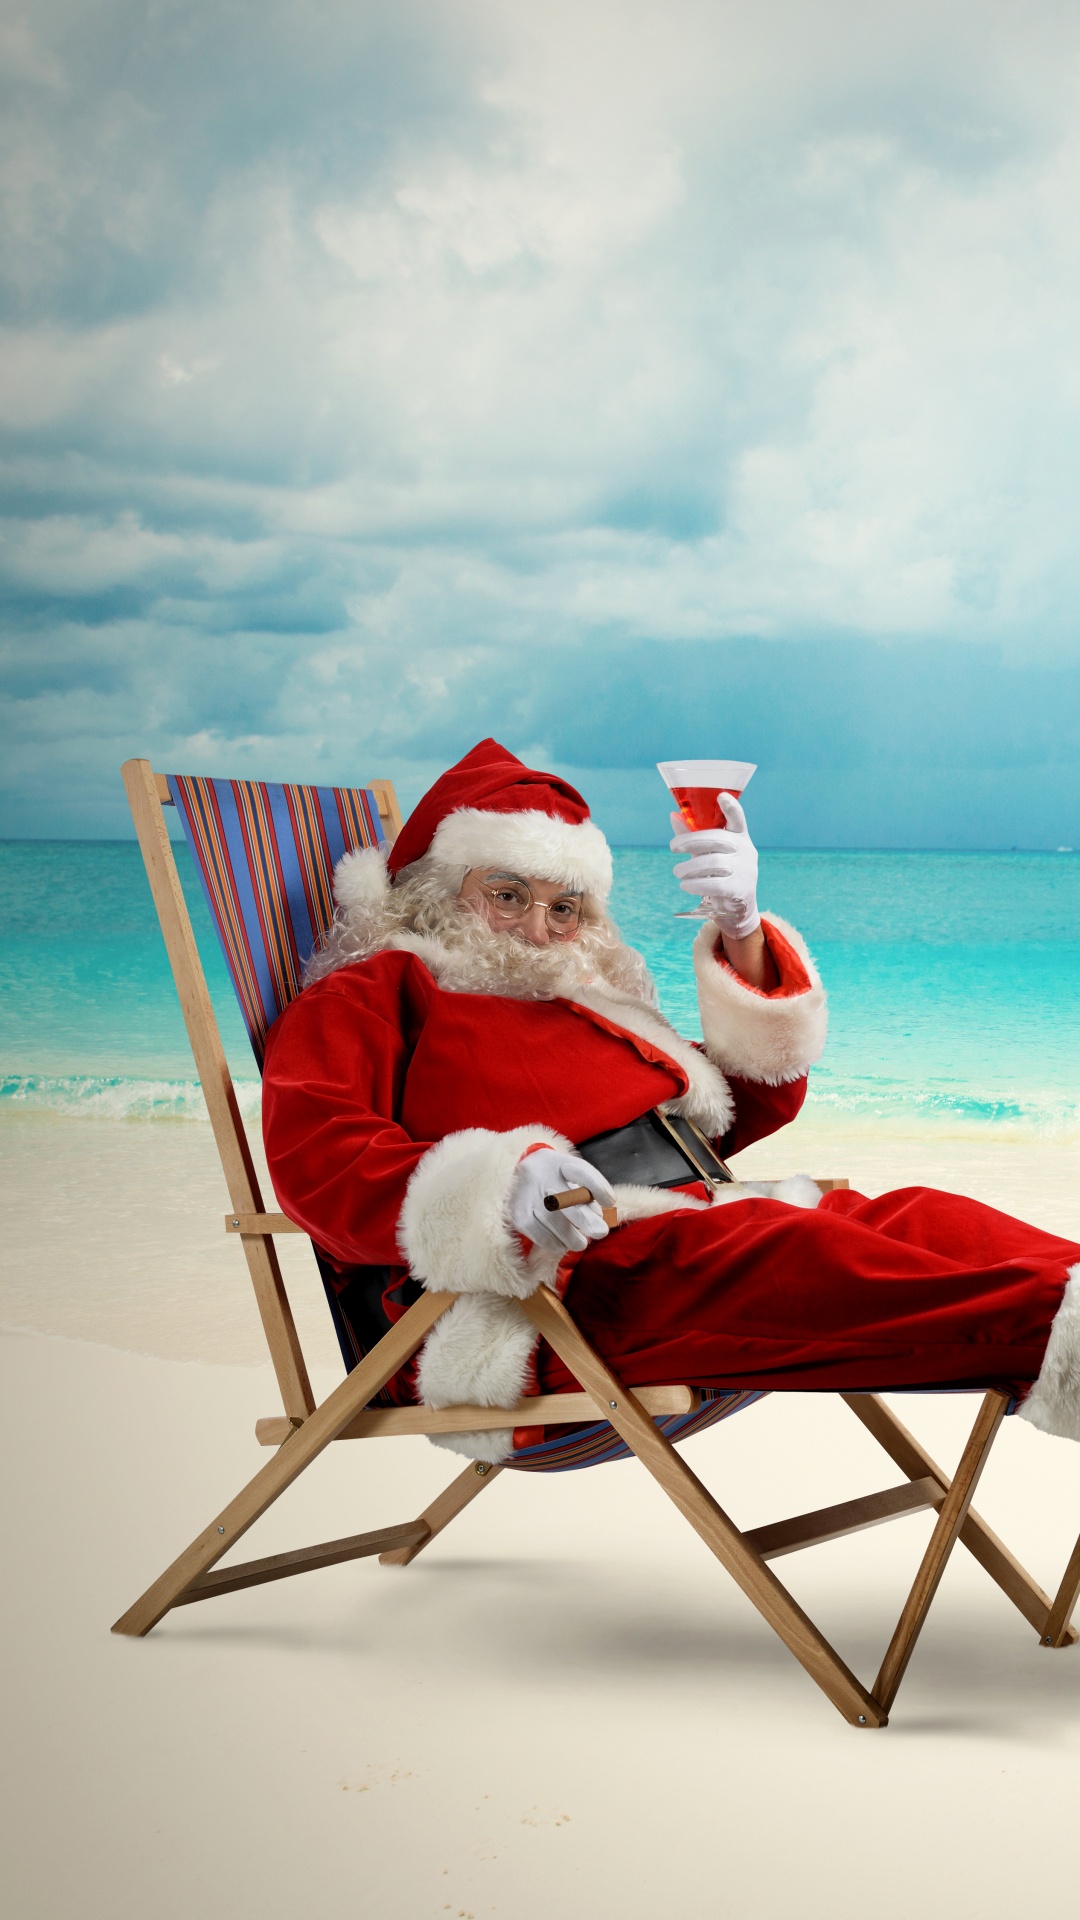 圣诞老人, 圣诞节那天, 大海, 度假, 海洋 壁纸 1080x1920 允许